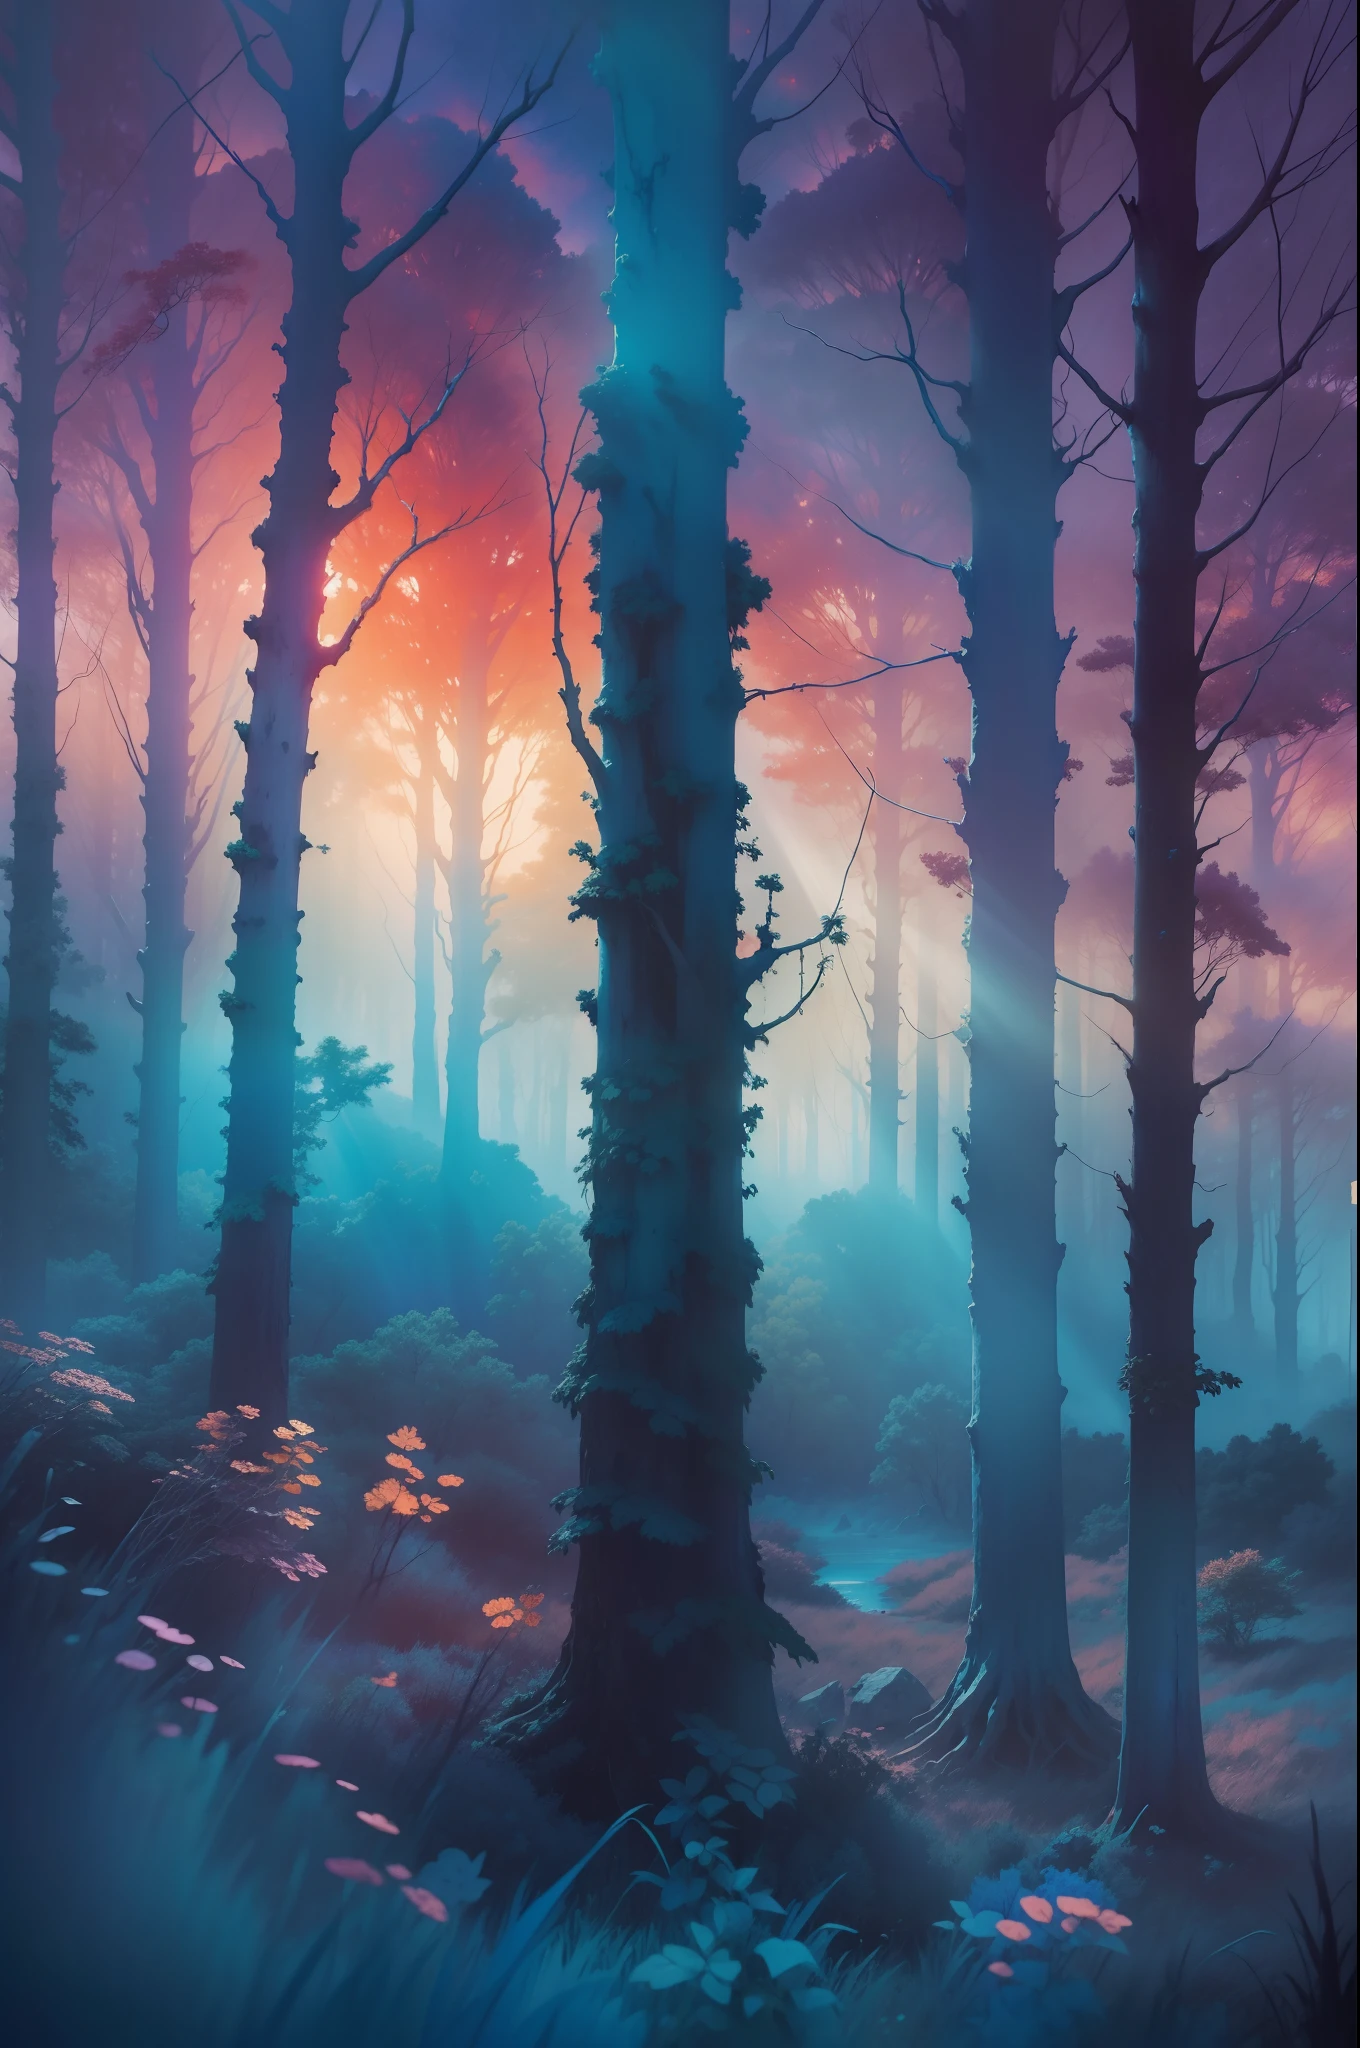 푸른 일몰, 신의 광선 ,숲,매우 상세한 색상, 수채화, Beksinski의 추상 회화, 아드리안 게니(Adrian Ghenie)와 게르하르트 리히터(Gerhard Richter)의 일부, 걸작,8K 고해상도, 울트라 렌더 시네마틱